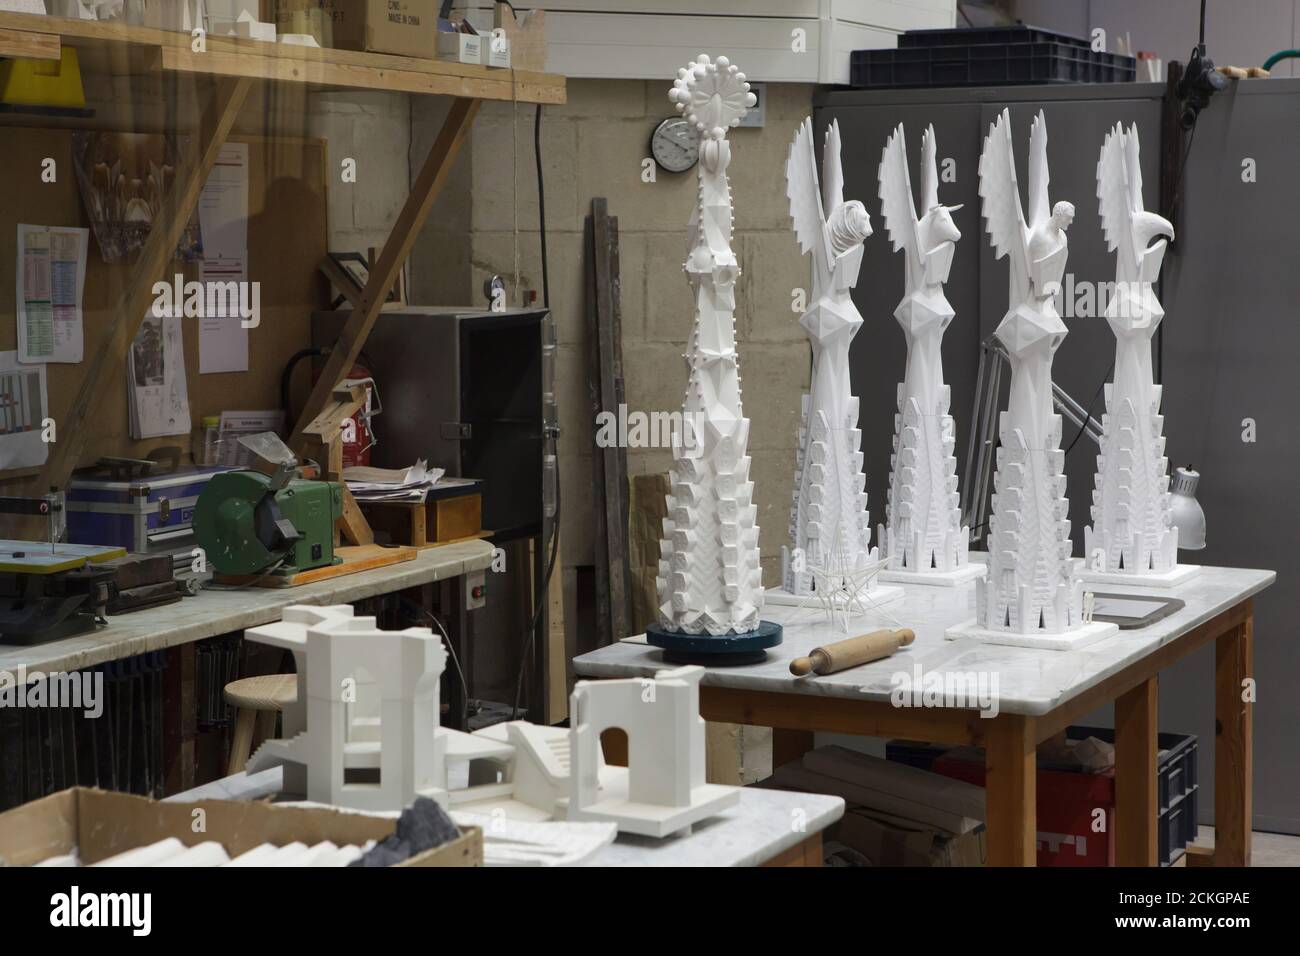 Maßstabsgezeigte Modelle von Zinnen für die Türme der Evangelisten der Sagrada Família (Basílica de la Sagrada Família) in der Modellwerkstatt unter der Sagrada Família in Barcelona, Katalonien, Spanien. Diese Figuren wurden vom spanischen Bildhauer Xavier Medina Campeny entworfen. Stockfoto